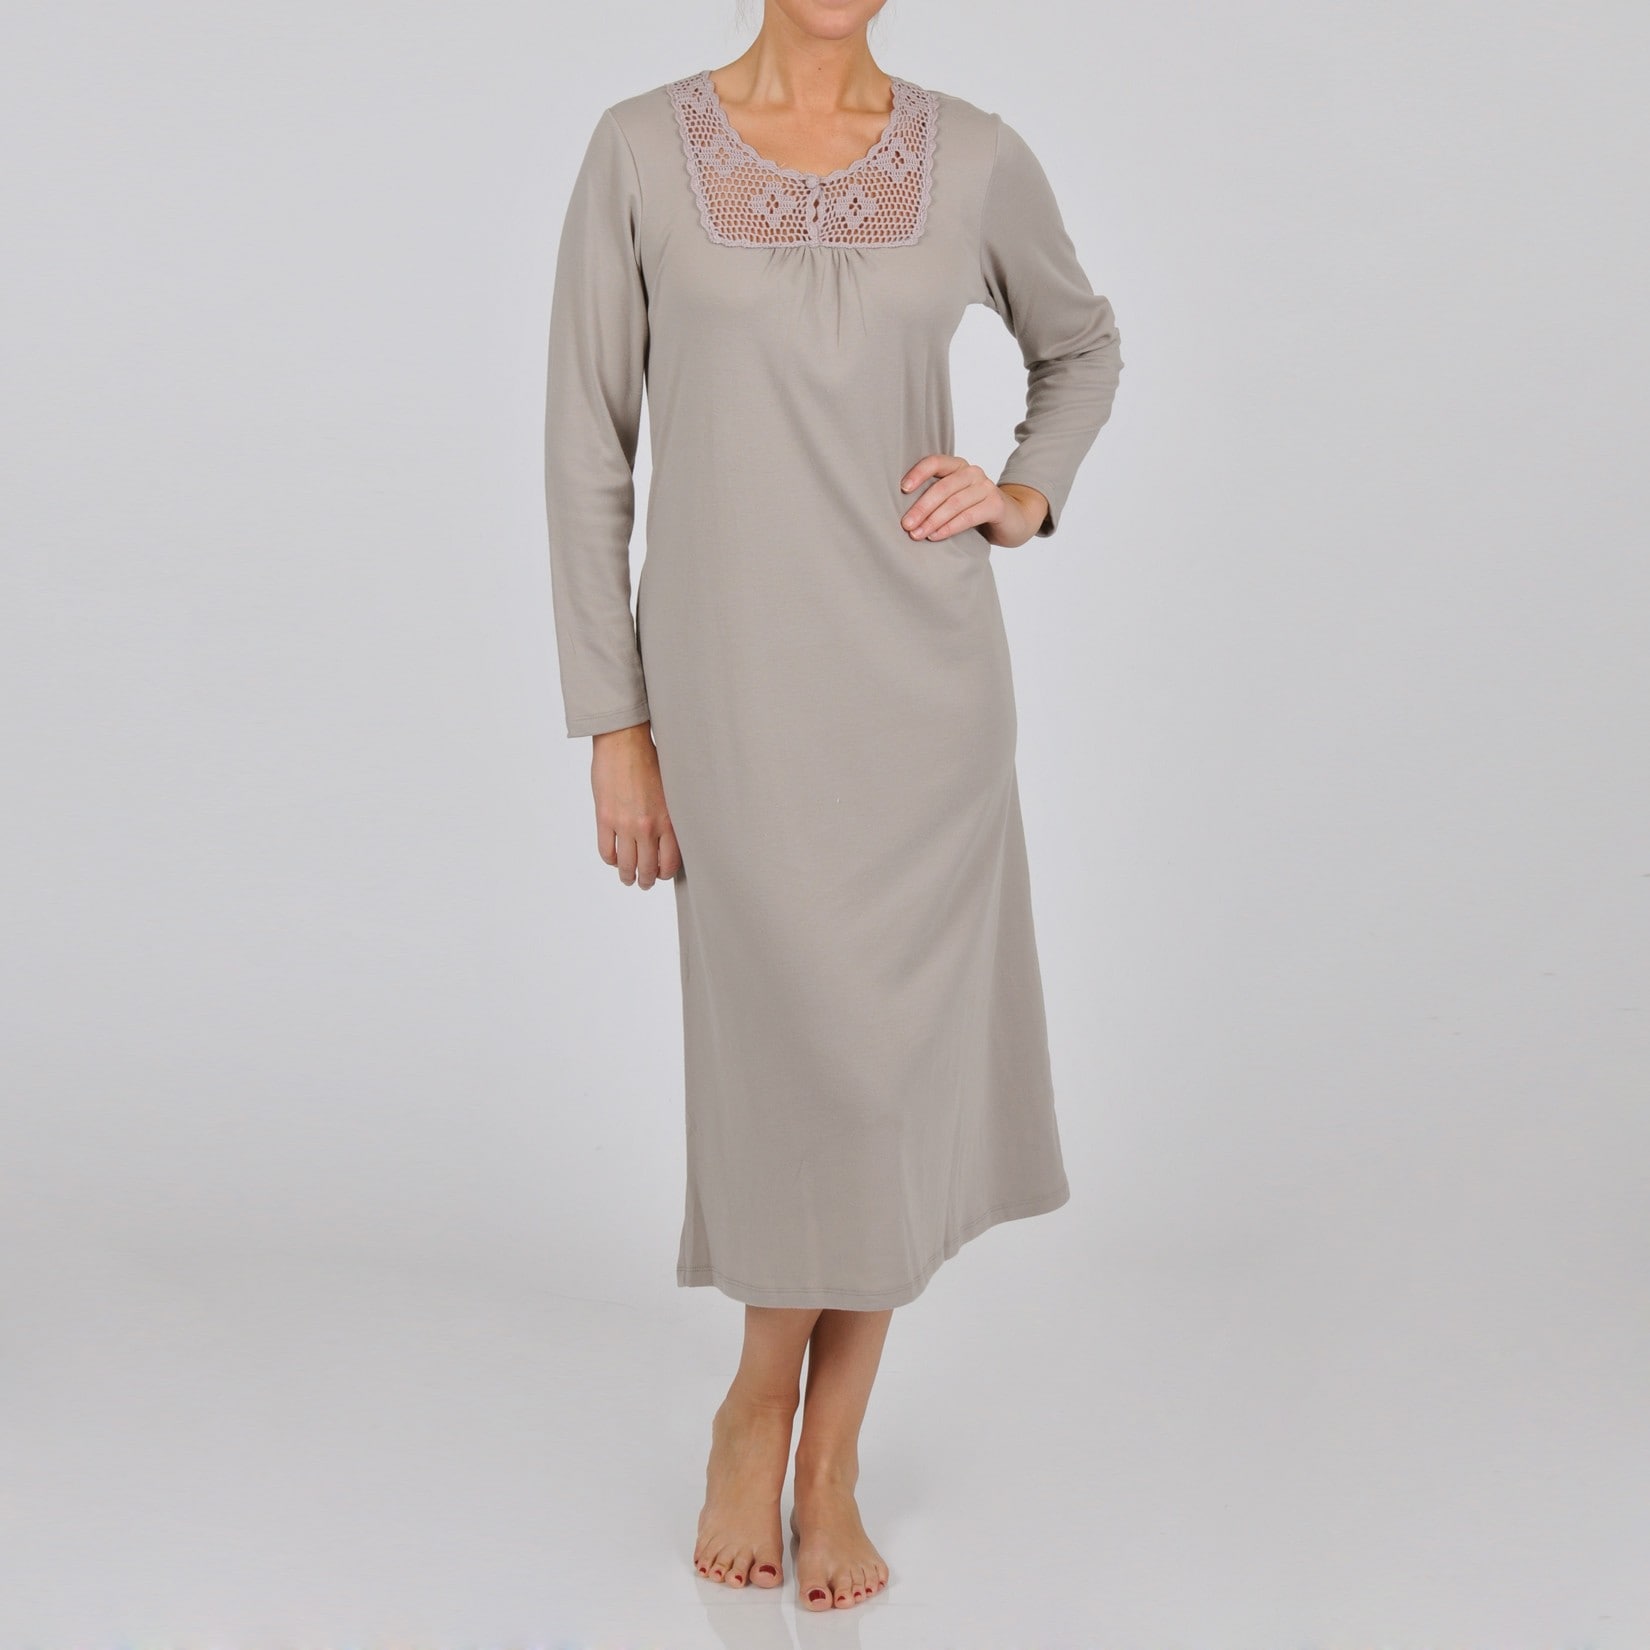 La Cera La Cera Womens Plus Size Long Sleeve Crochet Yoke Nightgown Ivory Size 1X (14W  16W)